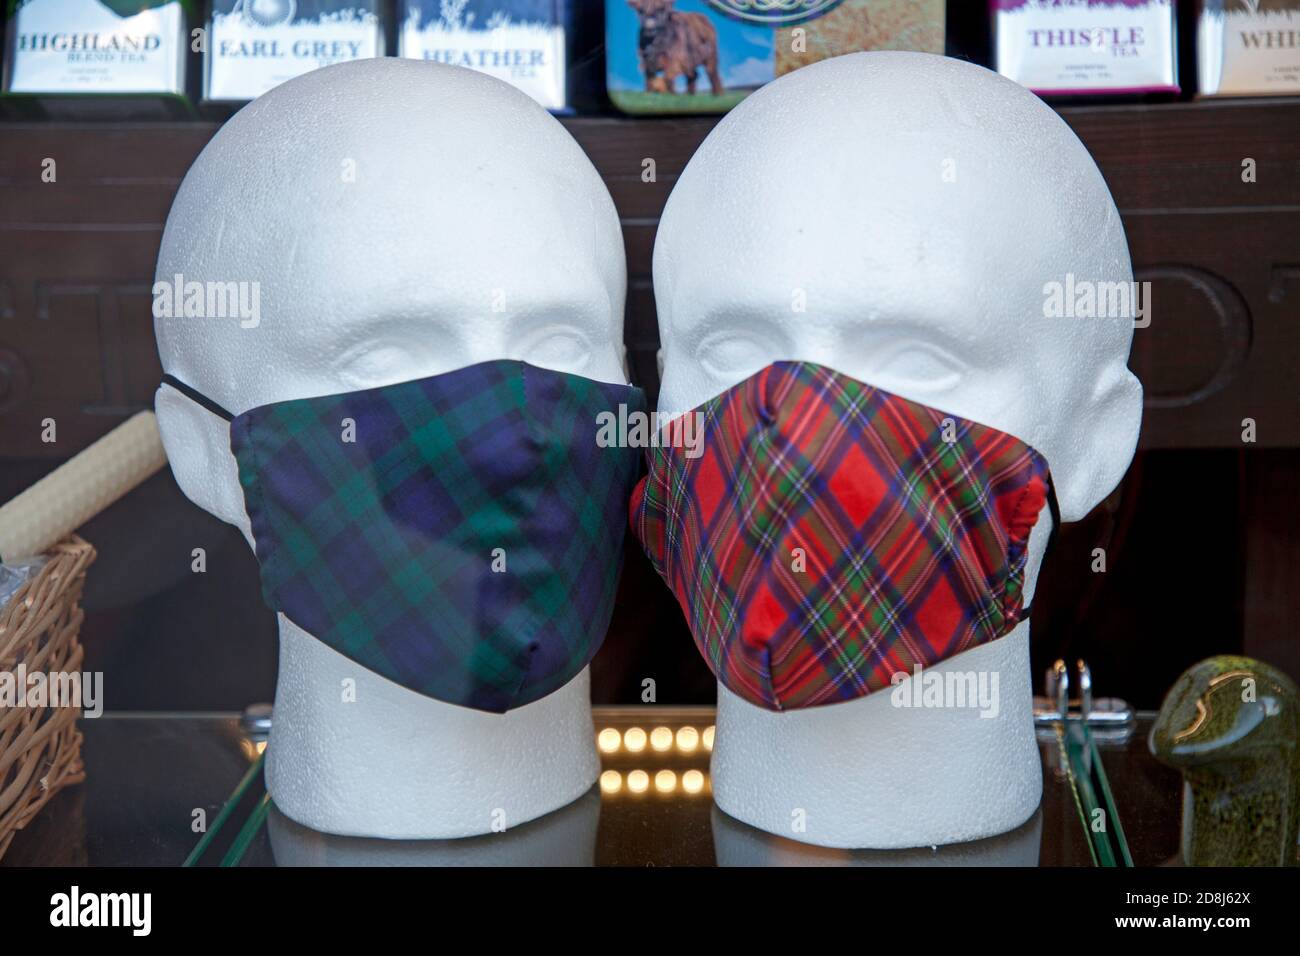 Centro di Edimburgo, Scozia, Regno Unito. 30 ottobre 2020. Maschere facciali in vendita. I pochi turisti che si trovano lì sono poco aperti per intrattenere nel centro della città con pub e ristoranti ancora chiusi a causa delle restrizioni Covid-19. Foto Stock